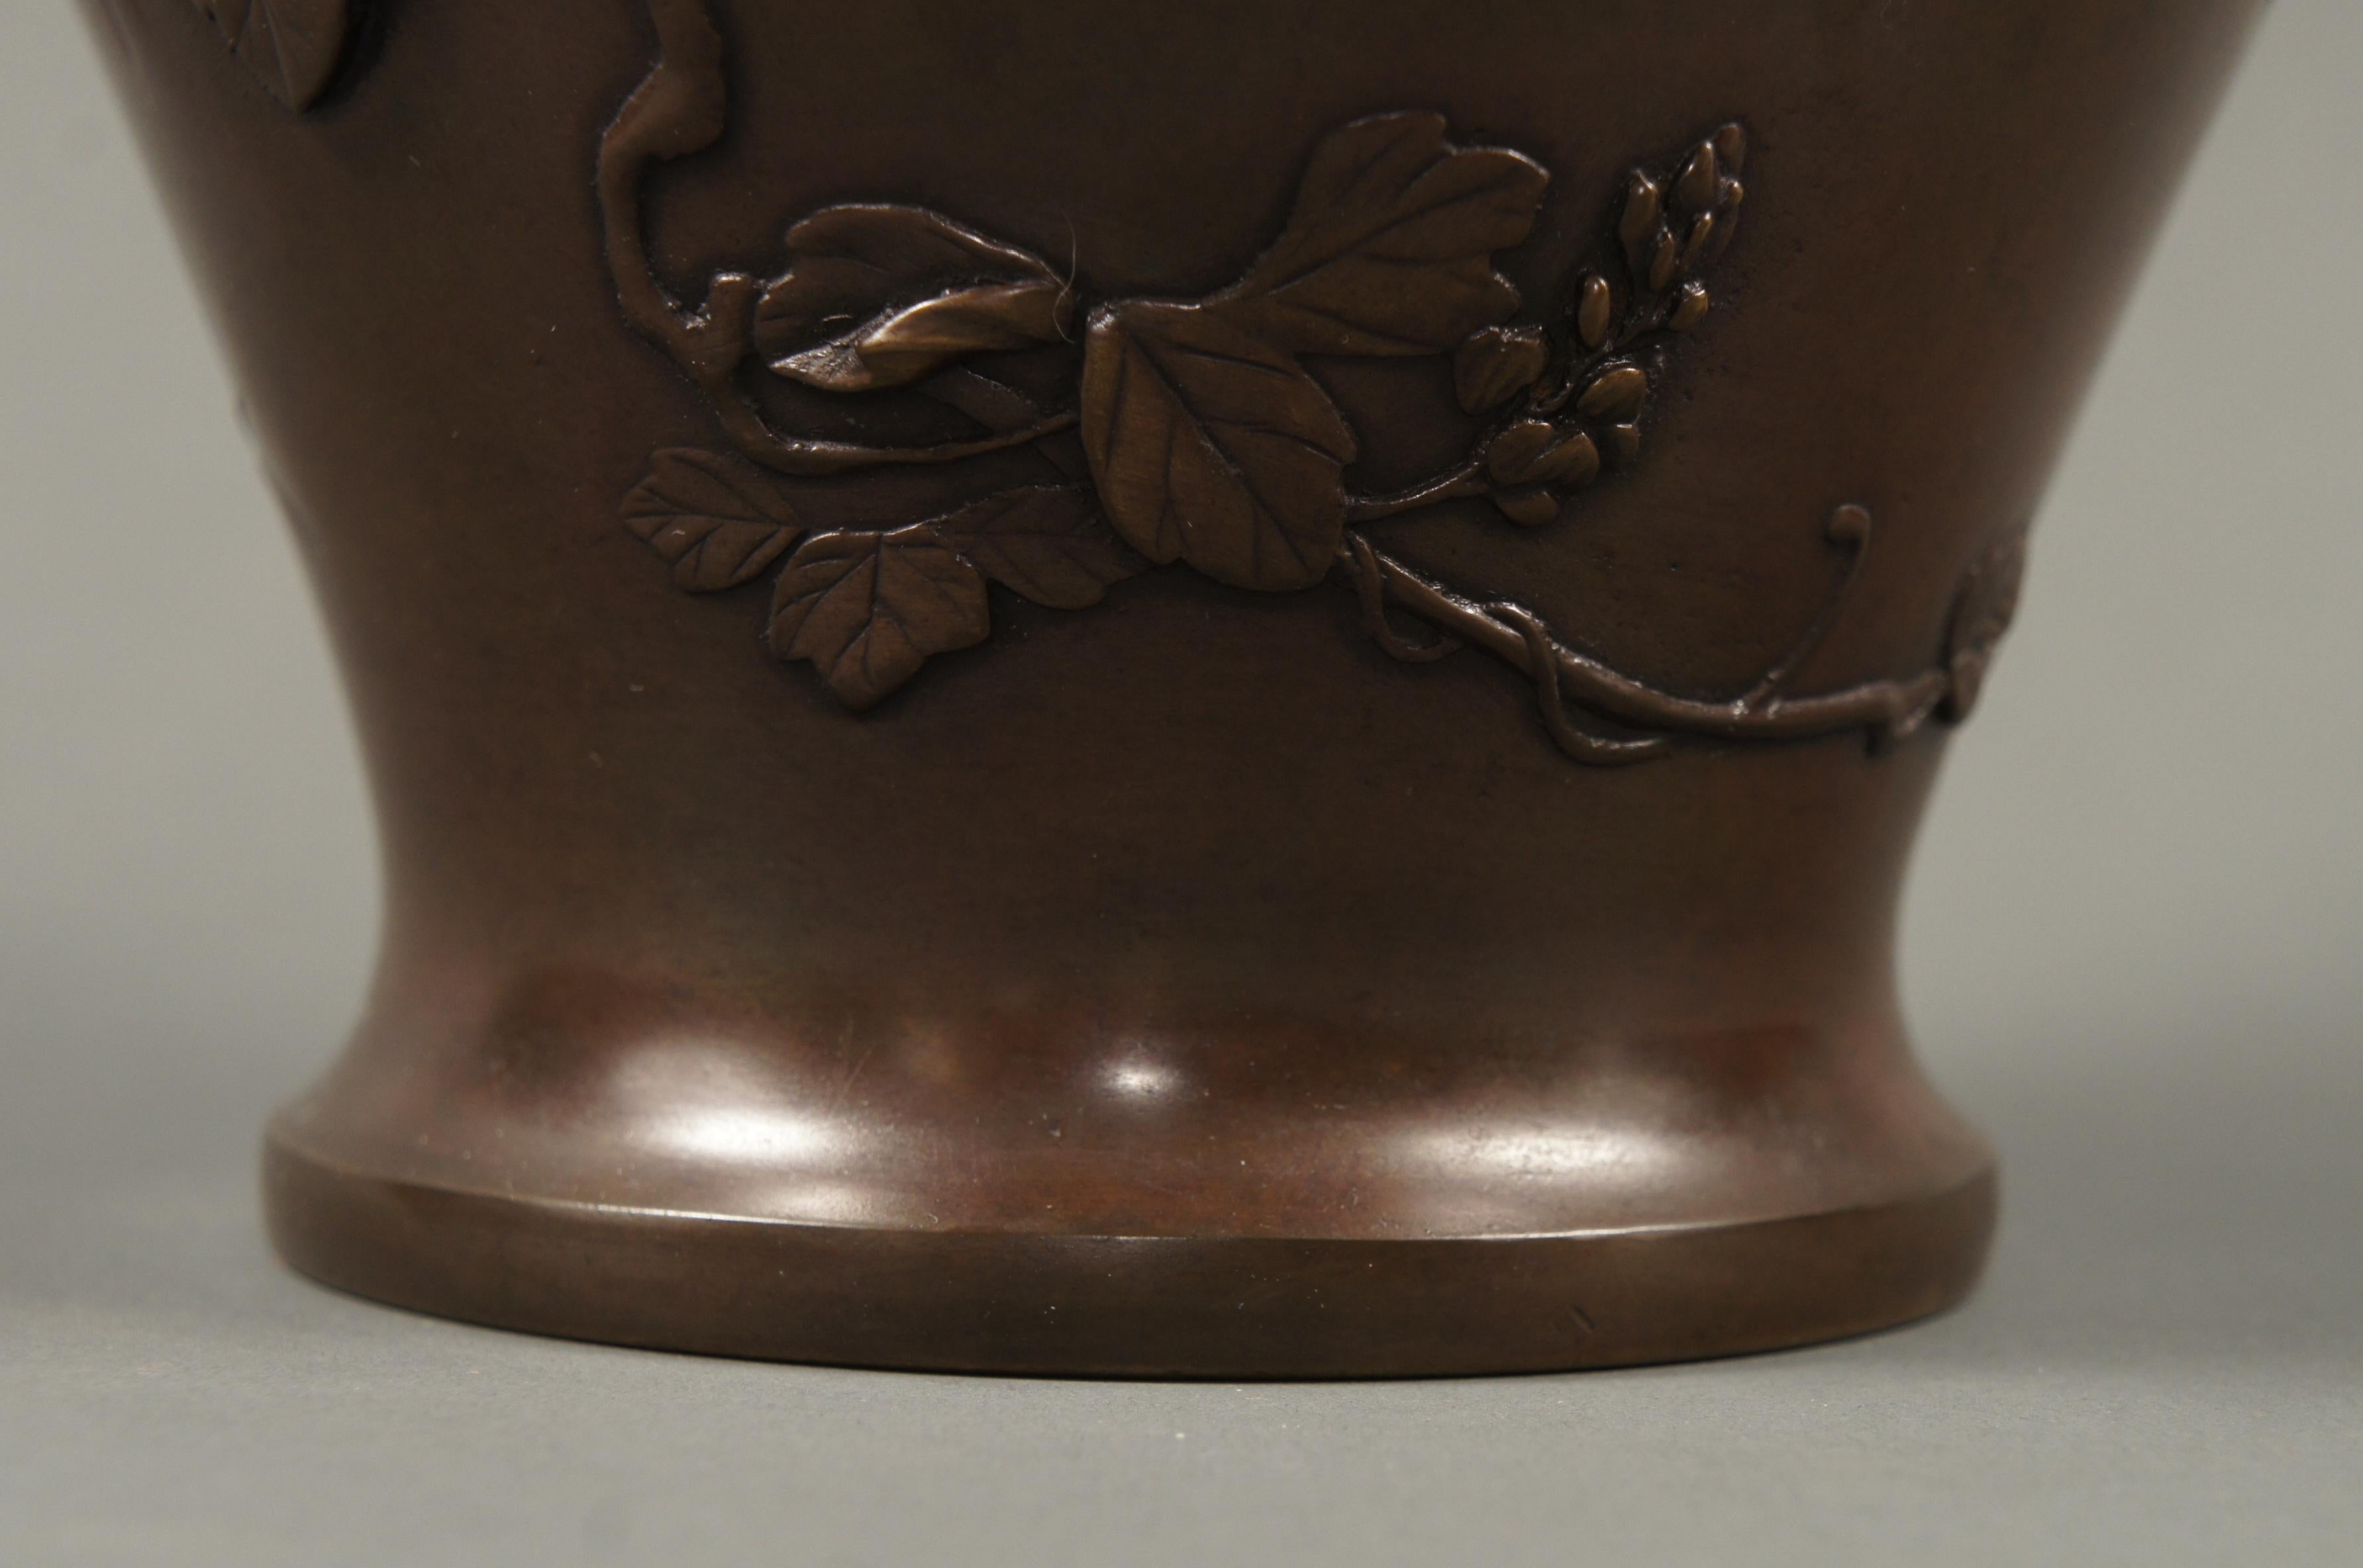 meiji bronze vase